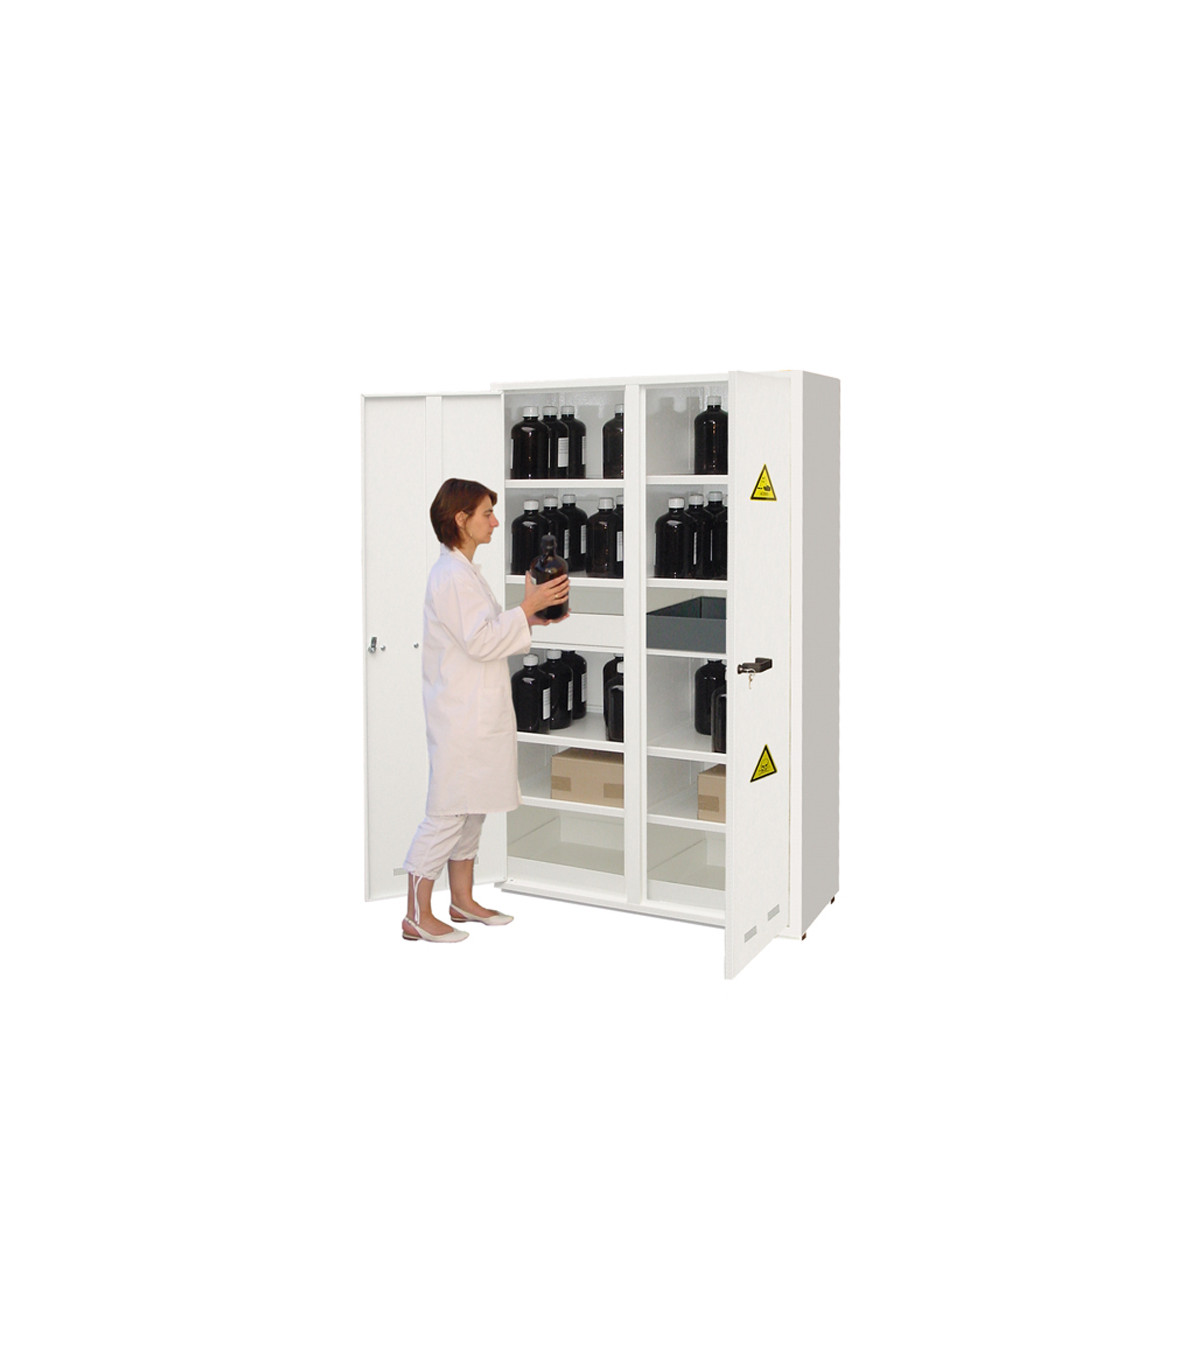 Estante adicional para compartimentos ácidos, básicos y tóxicos (ancho 550  mm) ECOSAFE, comprar online